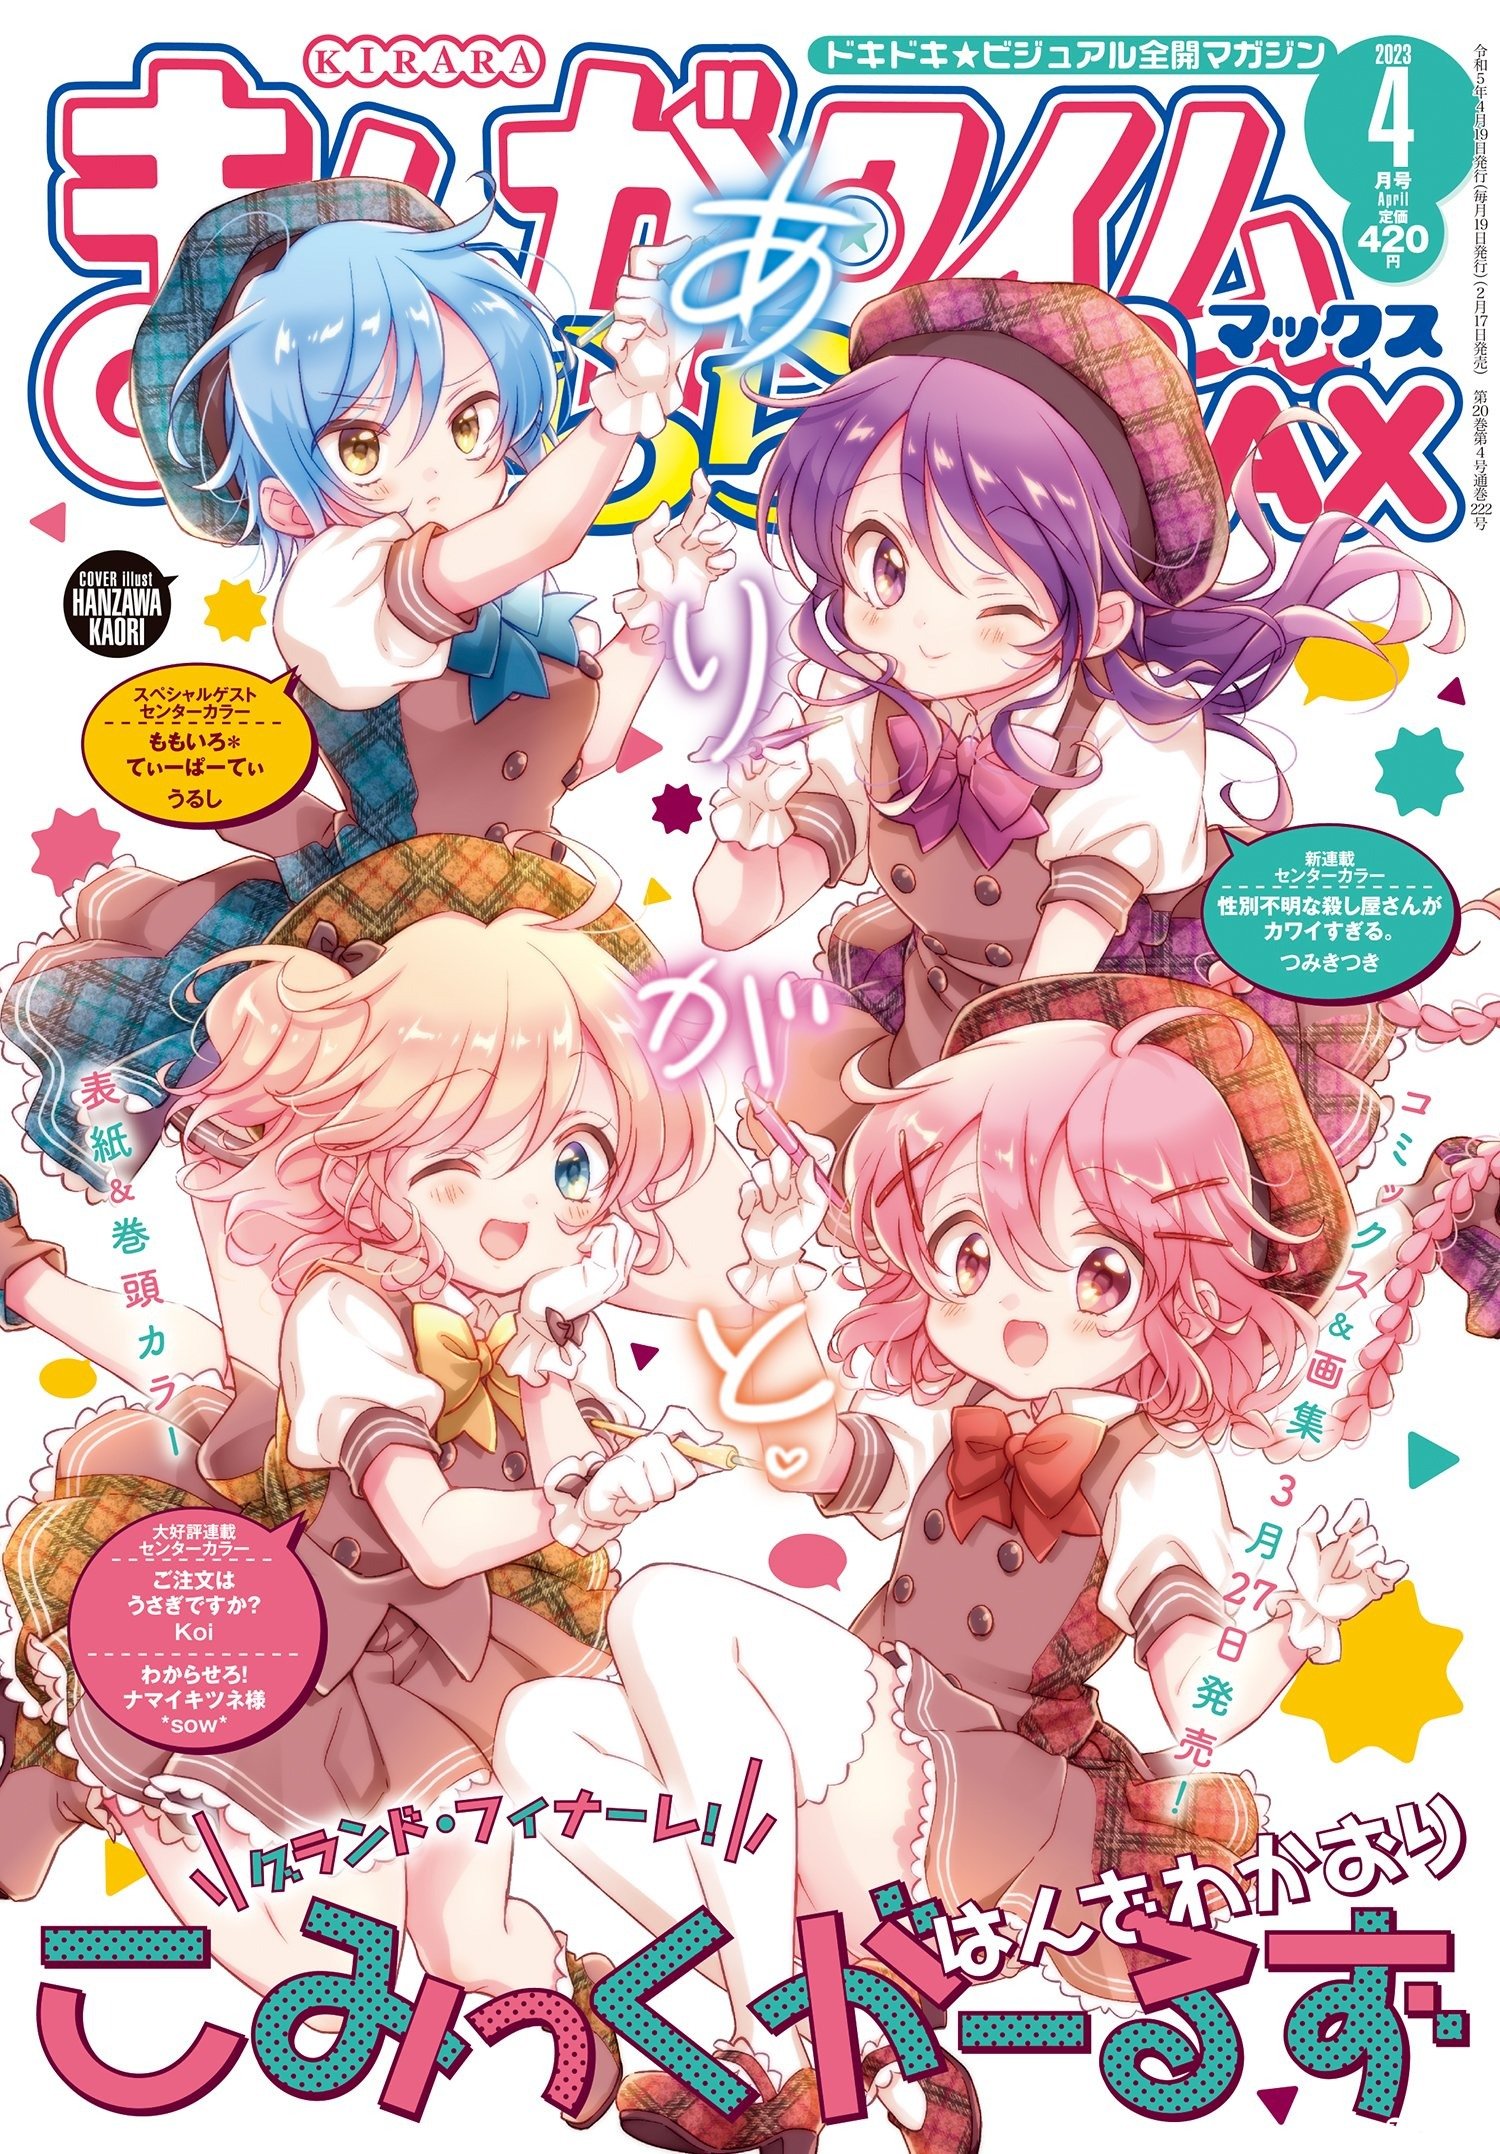 漫画《Comic Girls》最终卷将于3月27日发售